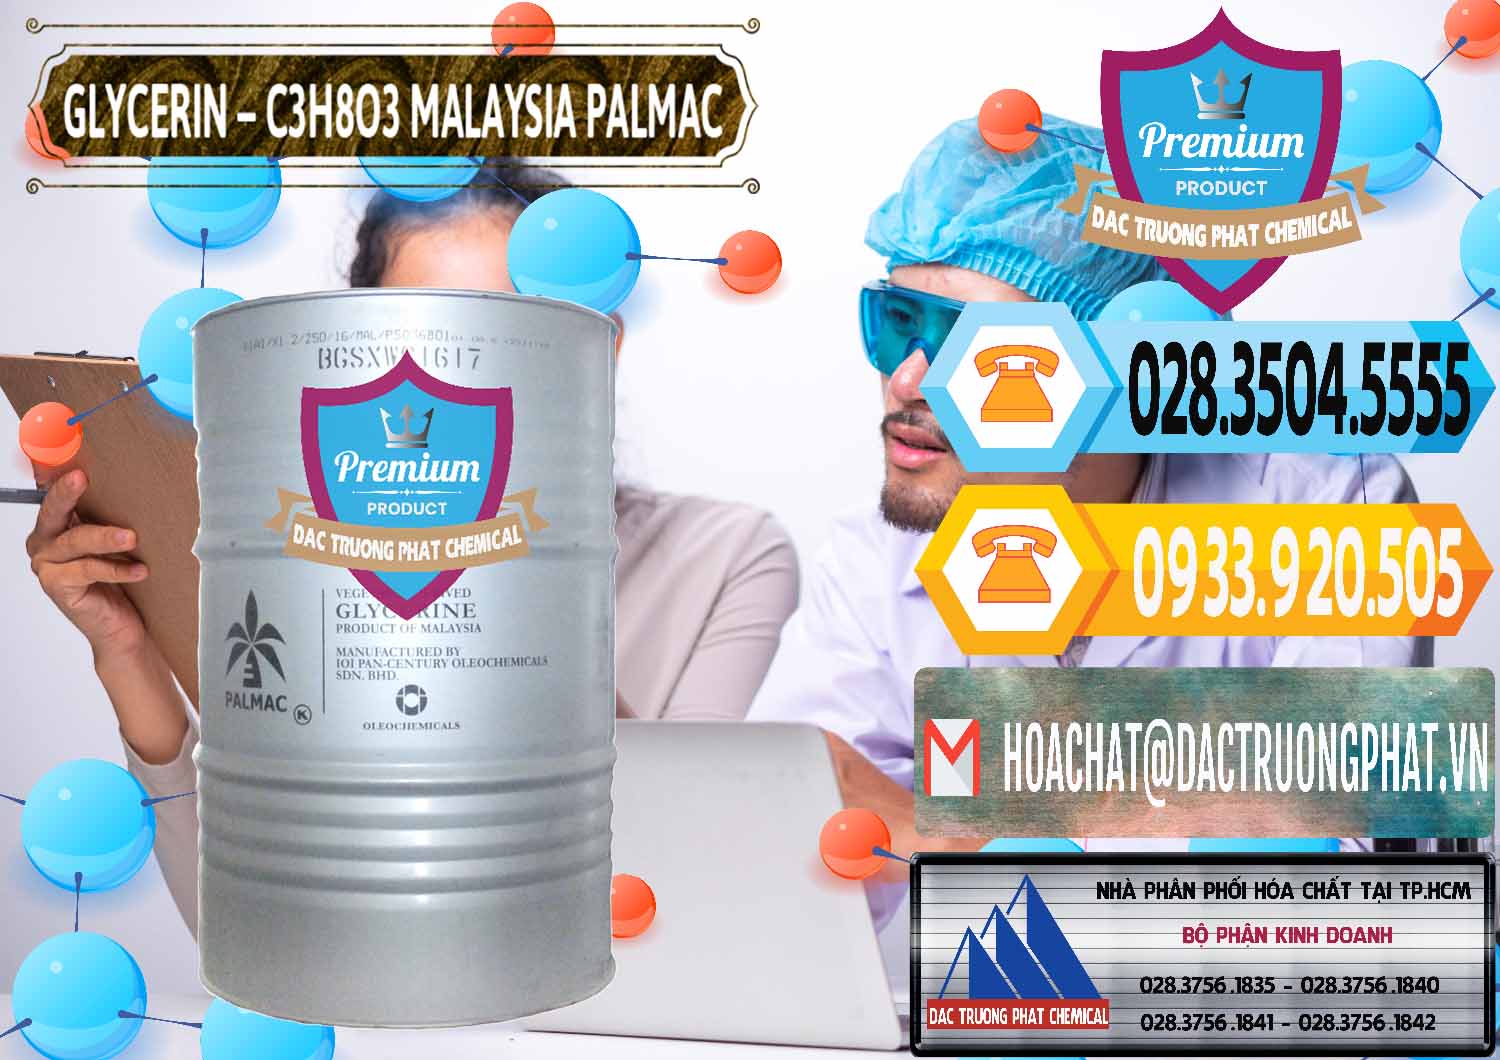 Công ty cung ứng & bán Glycerin – C3H8O3 99.7% Malaysia Palmac - 0067 - Cty phân phối _ cung cấp hóa chất tại TP.HCM - hoachattayrua.net